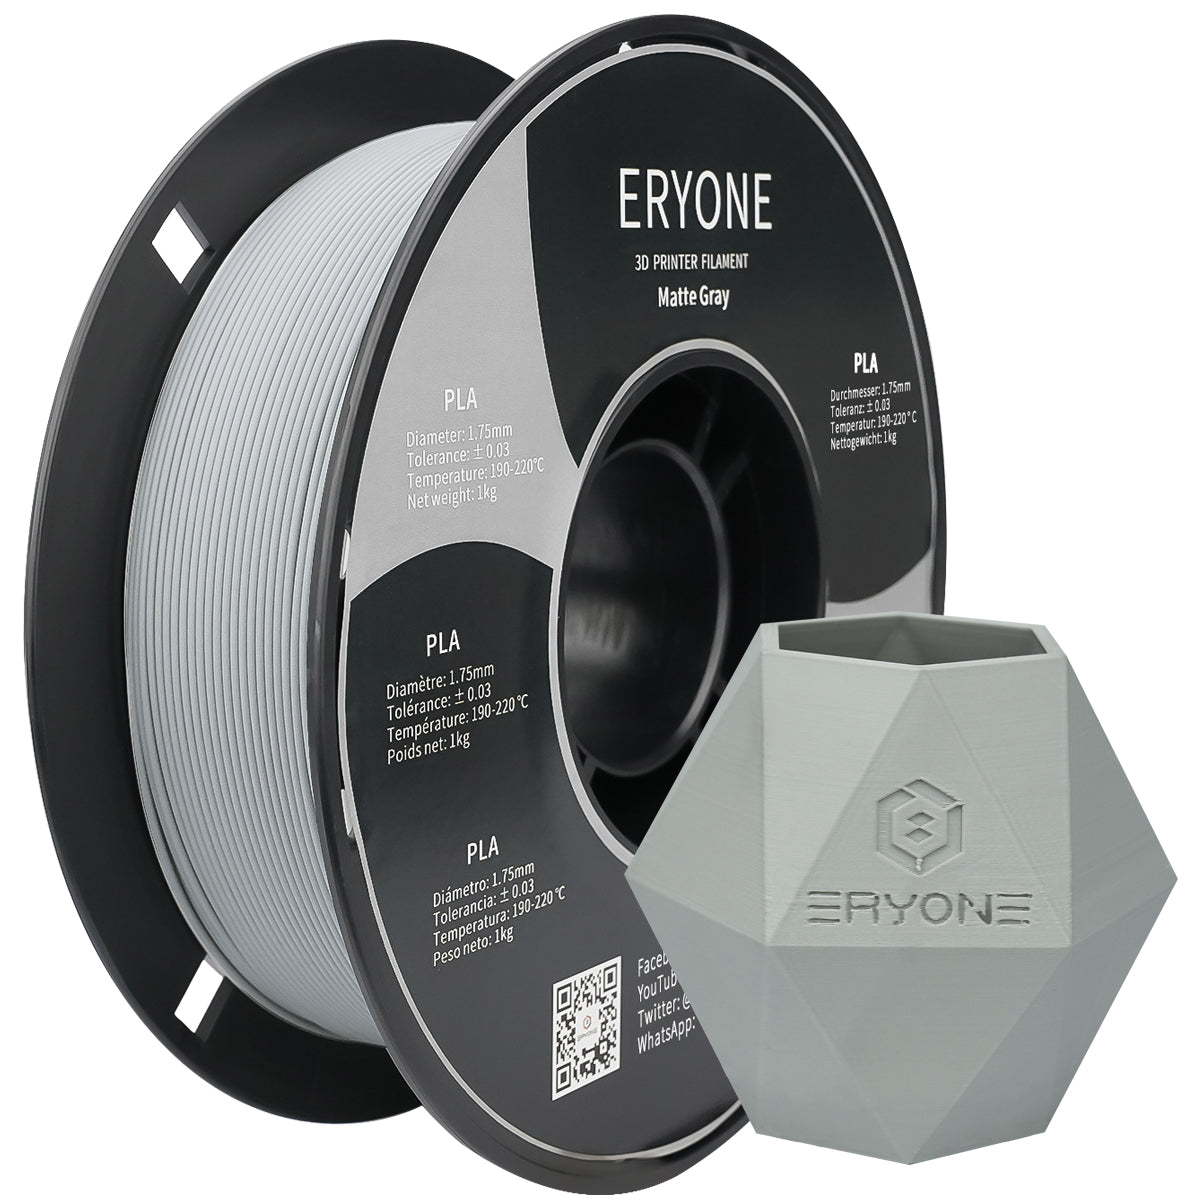 ERYONE Matte PLA Filament, 1.75mm Filament for 3D Printer, 1KG(2.2LBS)/ Spool,